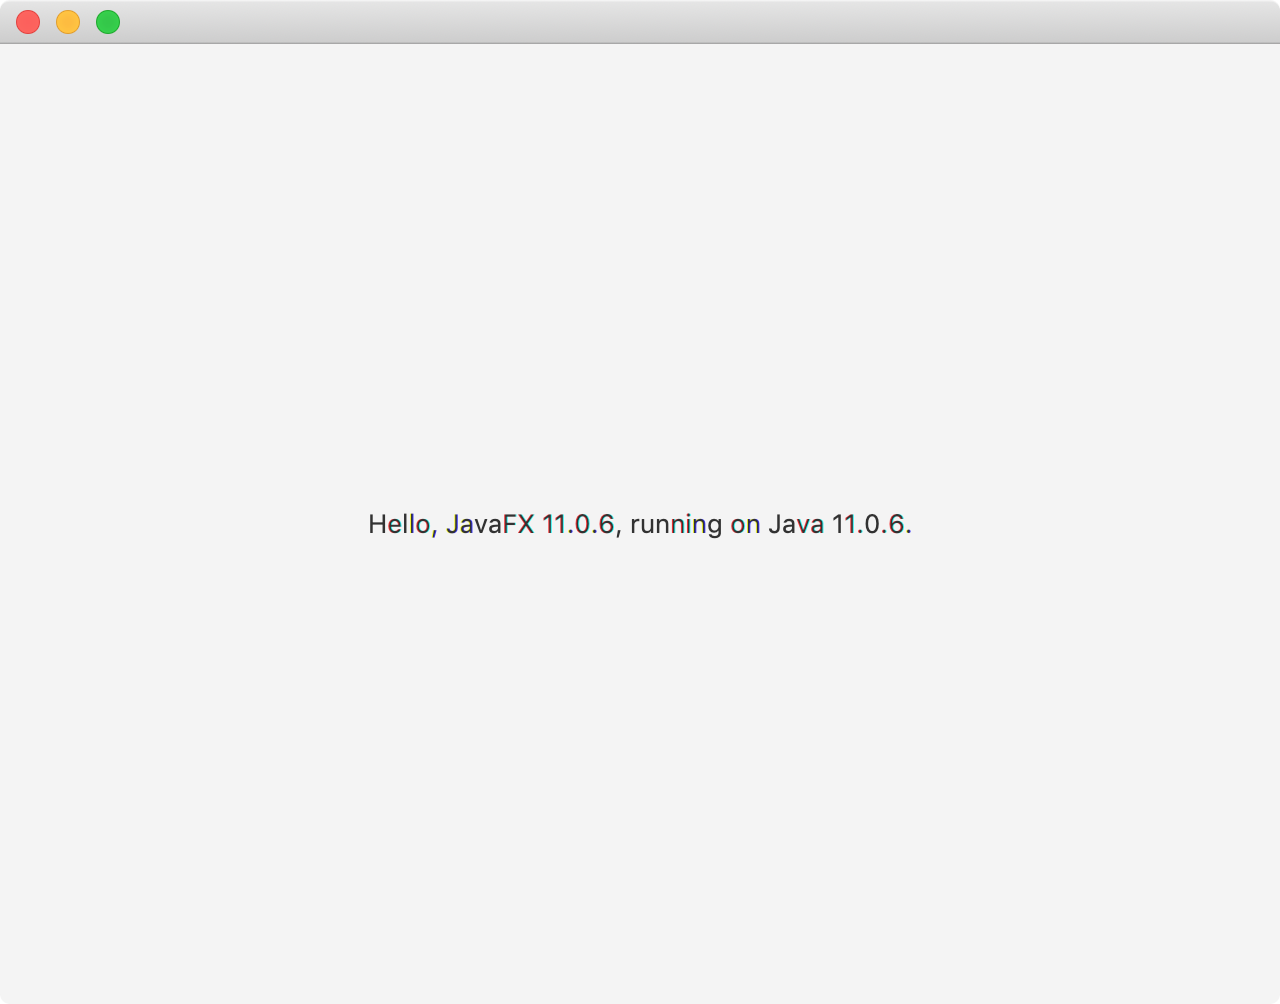 Hello, JavaFX 11.0.6, running on Java 11.0.6.